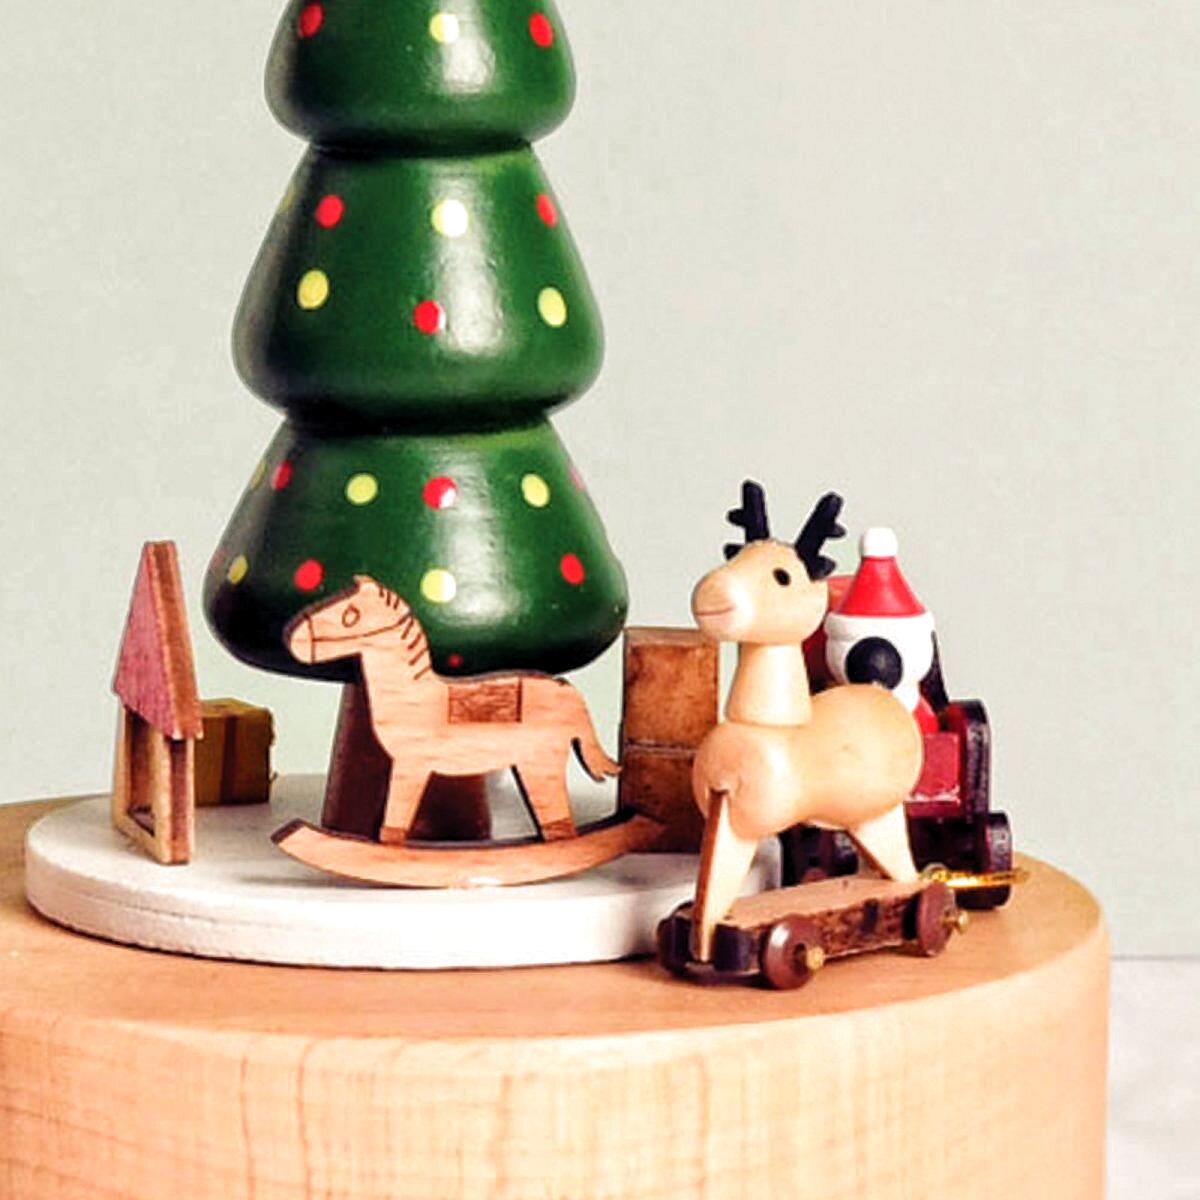 Weihnachtsschlitten und Weihnachtsbaum (Melodie: Wir wünschen Ihnen frohe Weihnachten)